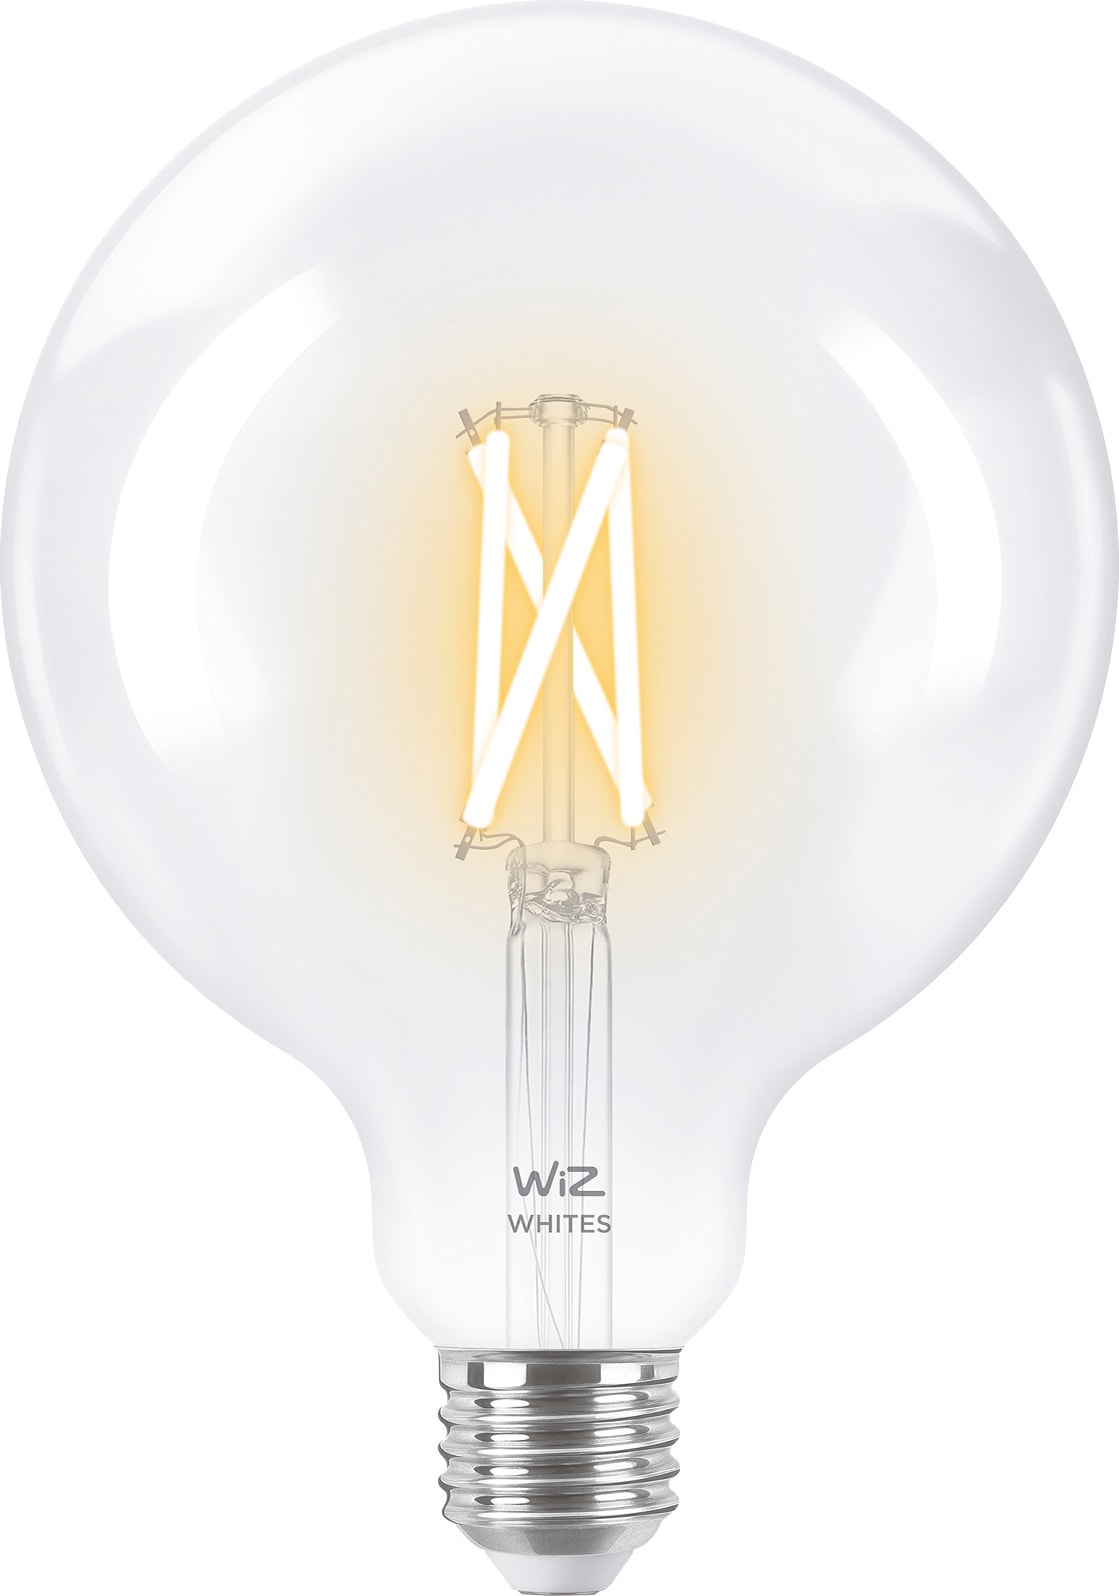 Billede af Wiz Light Globe LED-pære 7W E27 871869978671700 hos Elgiganten